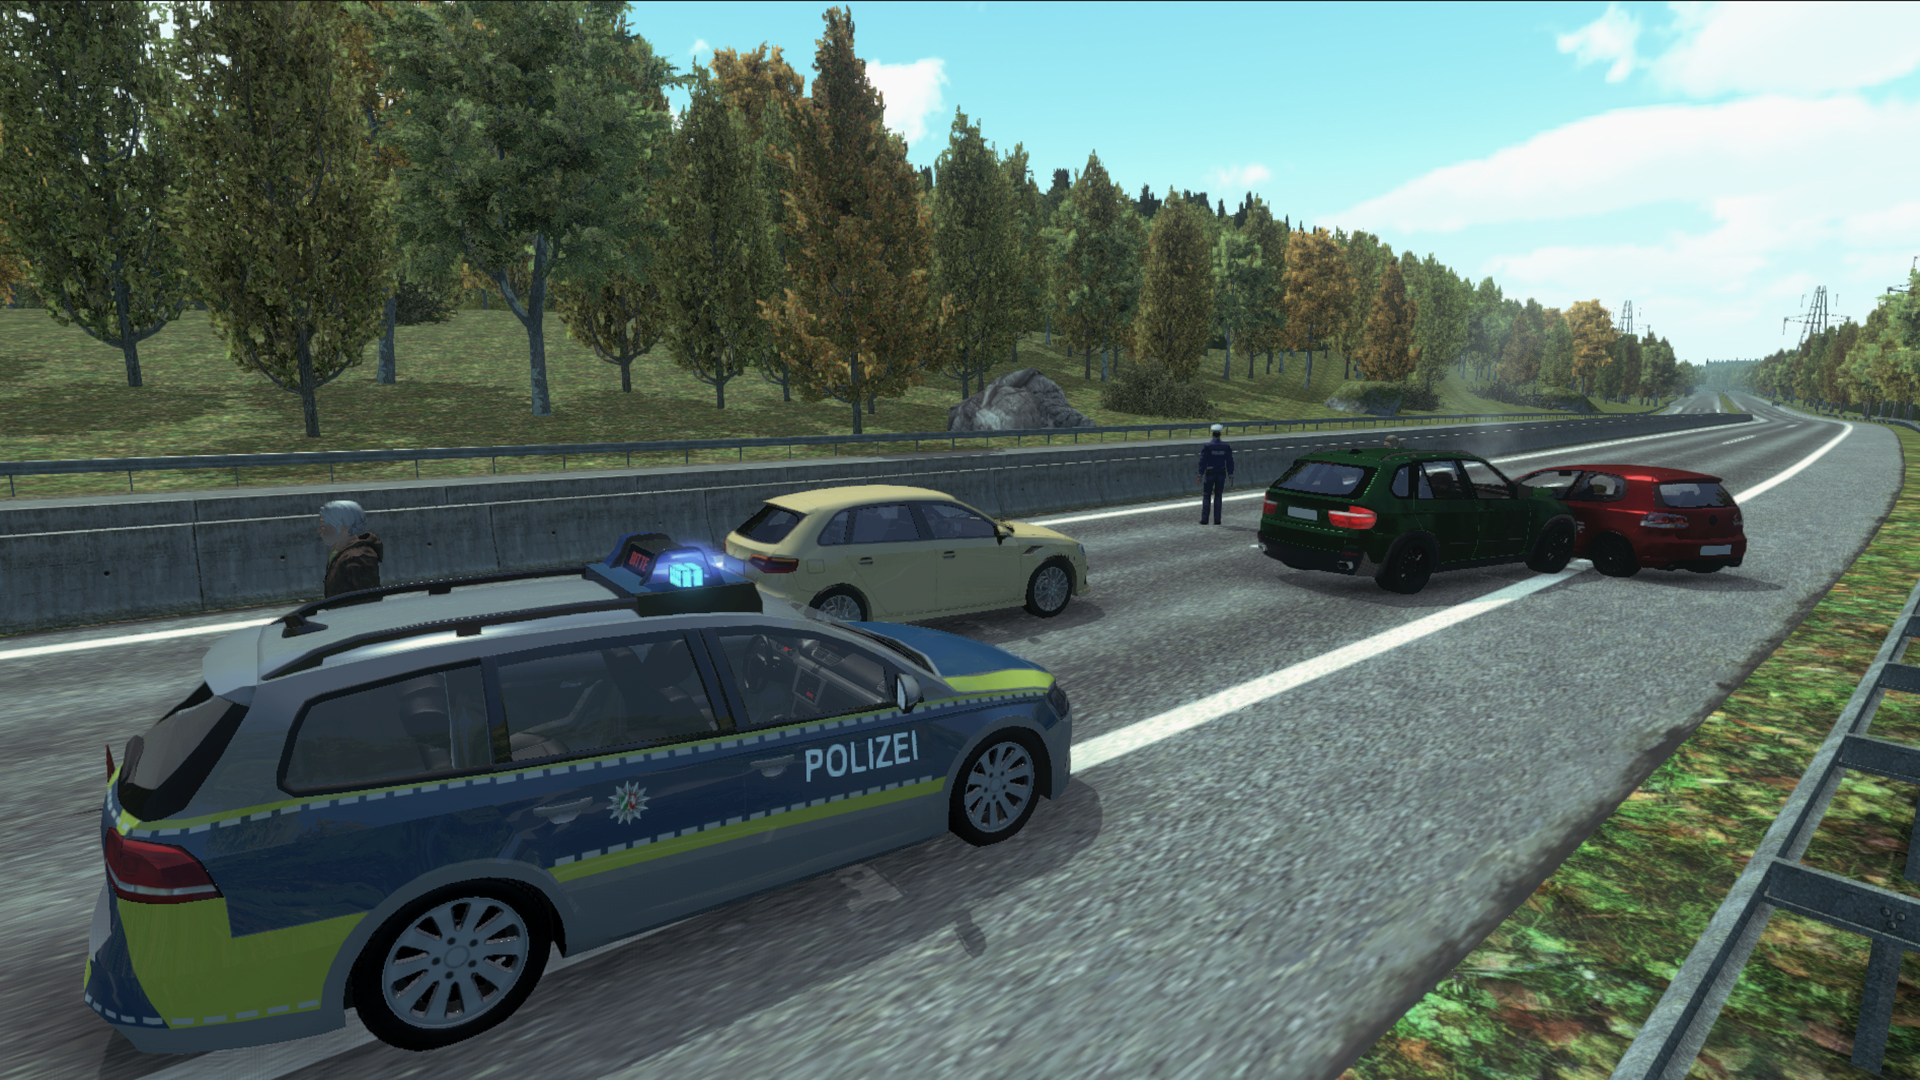 Police Autobahn Simulator on Steam